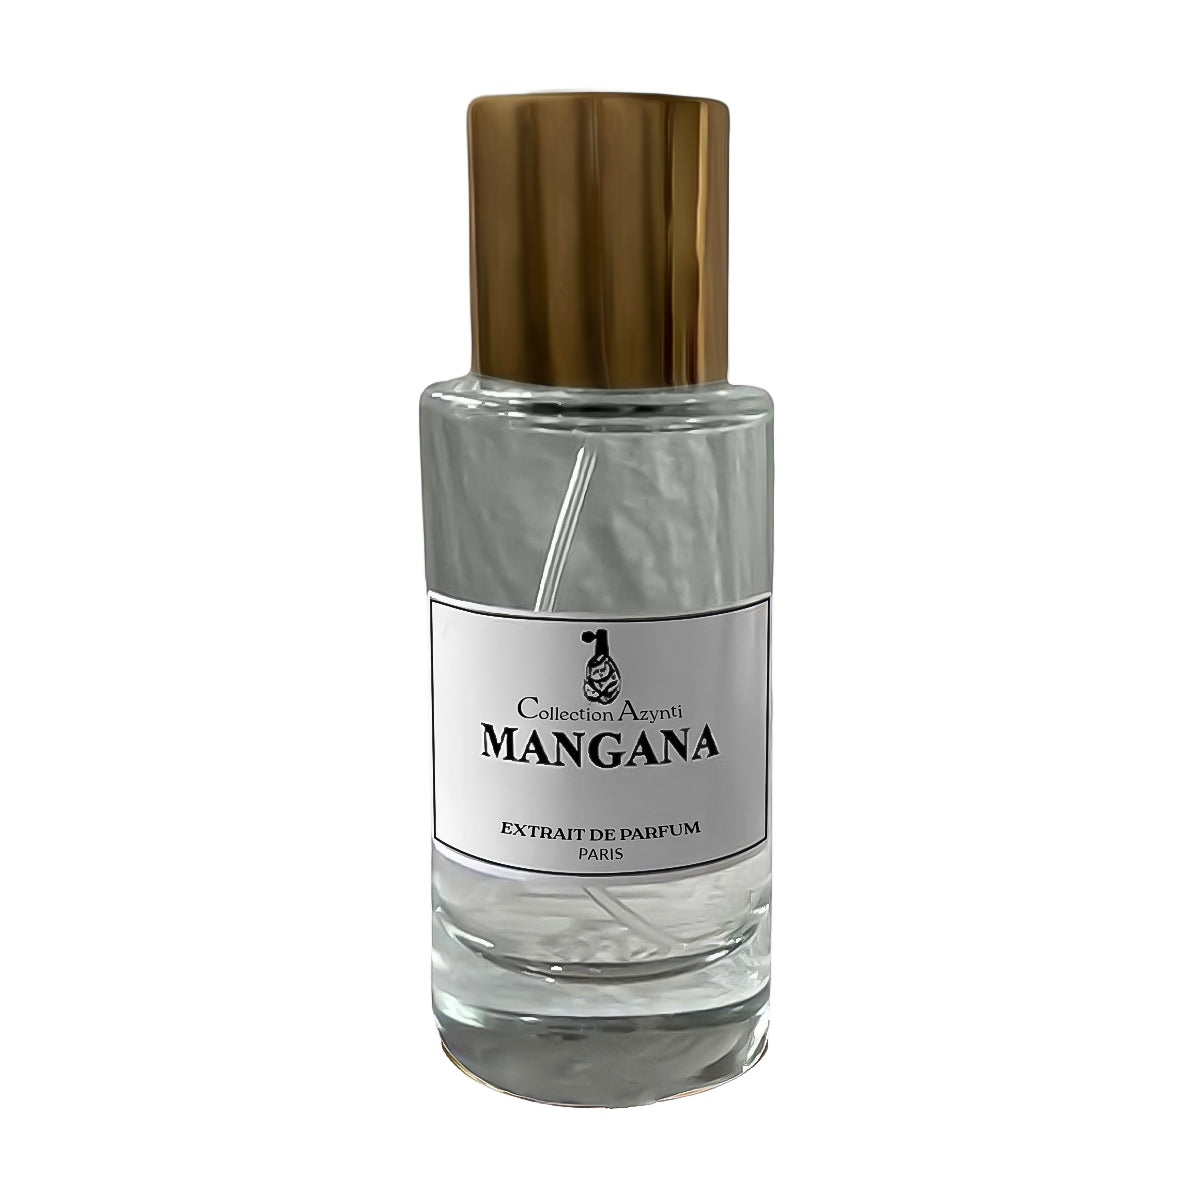 Mangana - Collection Azynti